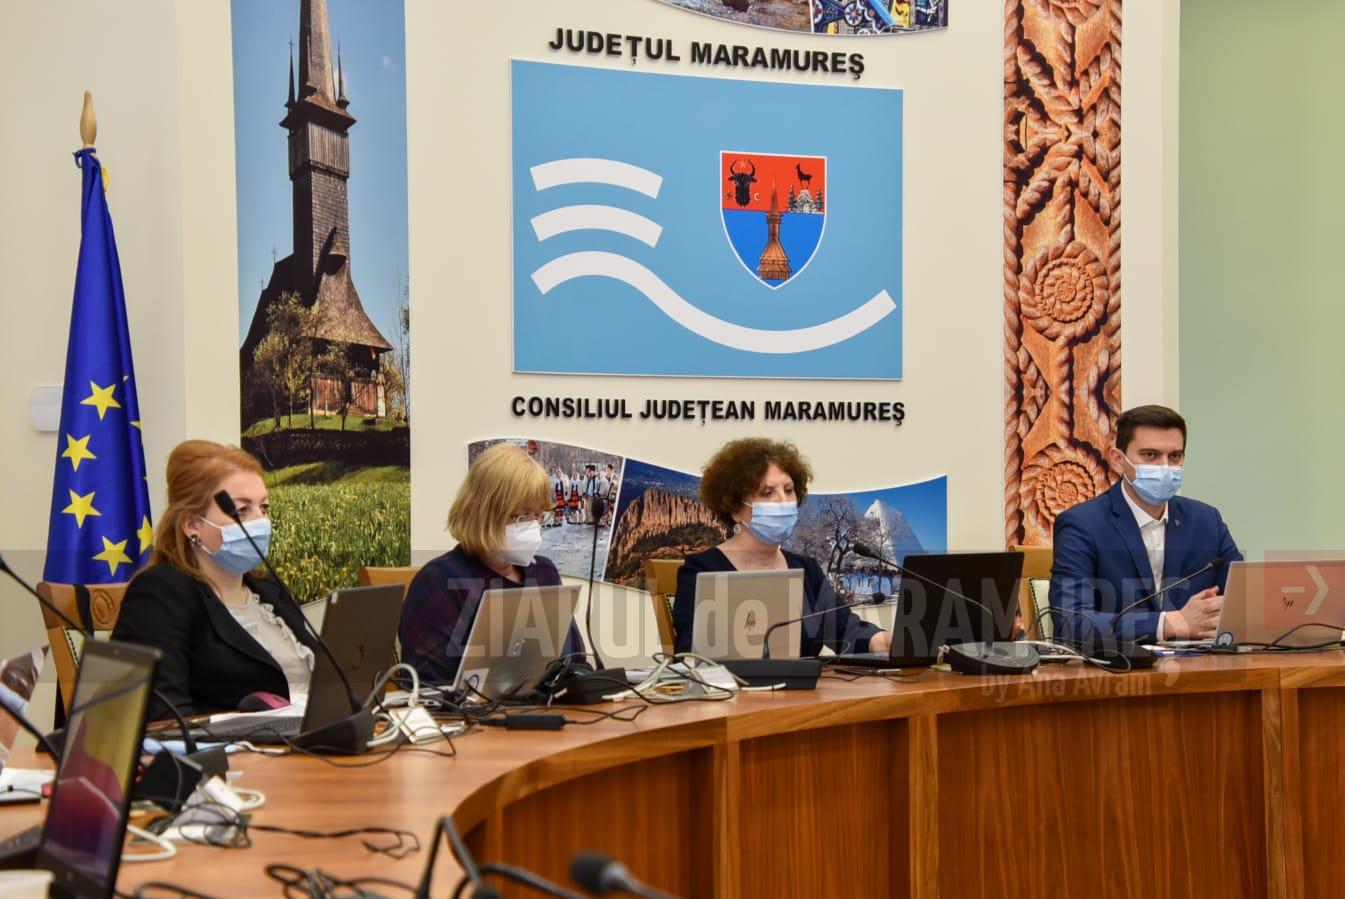 Consiliul Județean Maramureș, organizator al celei de-a cincea întâlniri interregionale din cadrul proiectului internațional Reduces